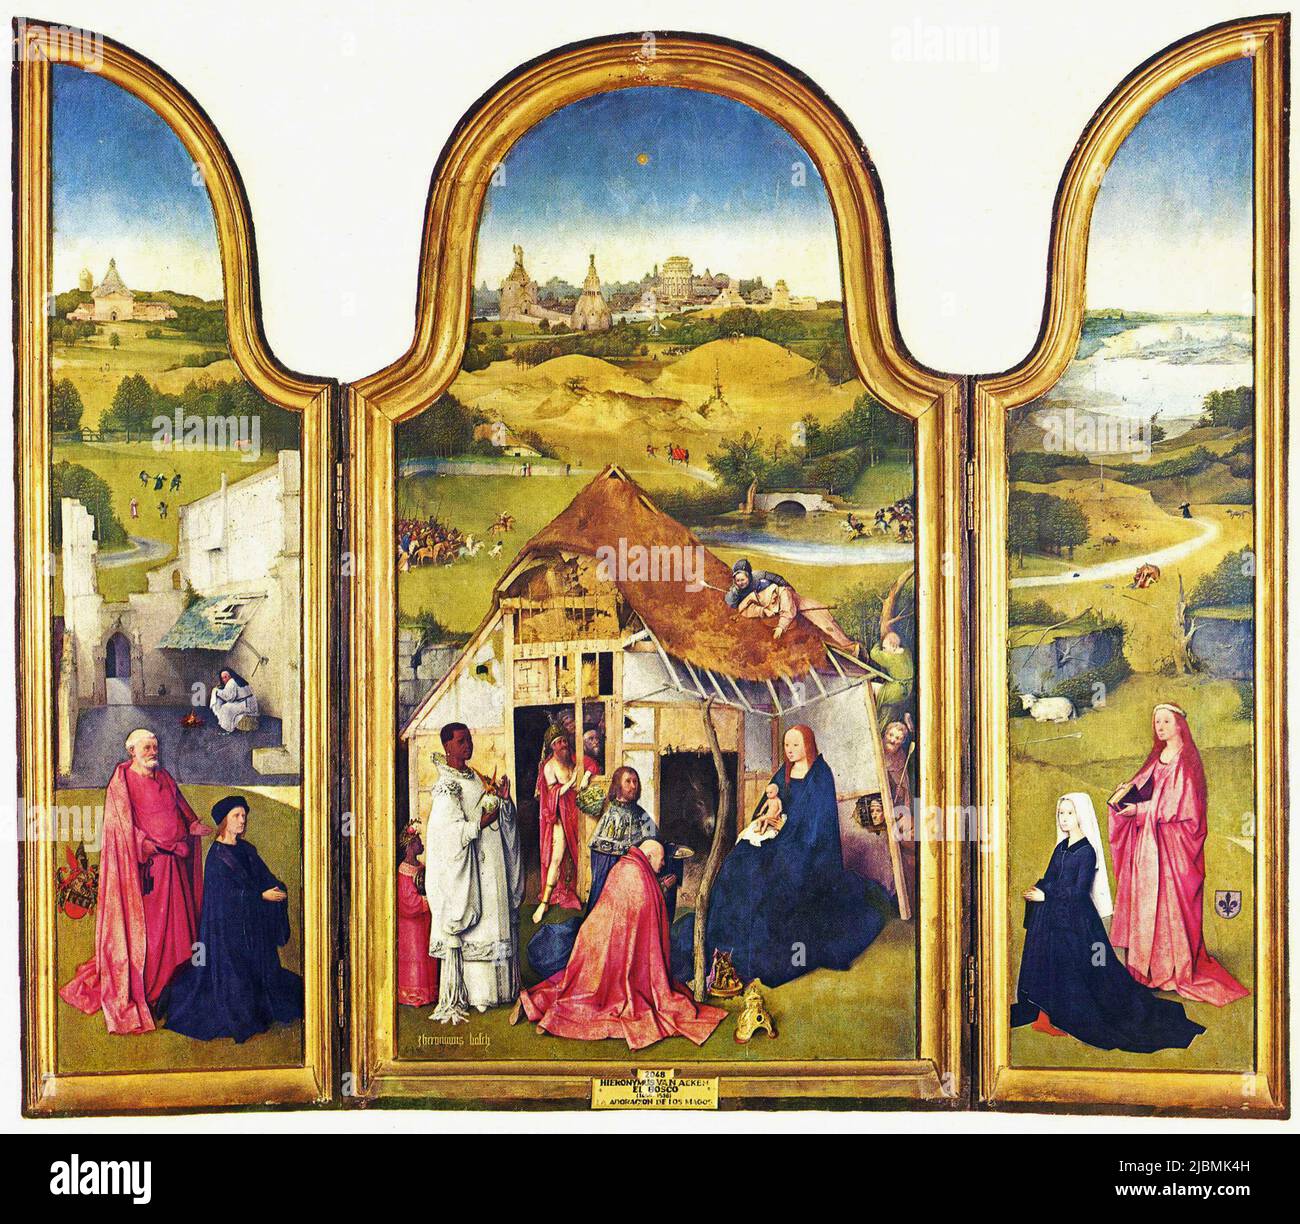 'La Adoración de los Magos'. Tríptico de Hieronymus Bosch. Madrid, Prado. Foto de stock